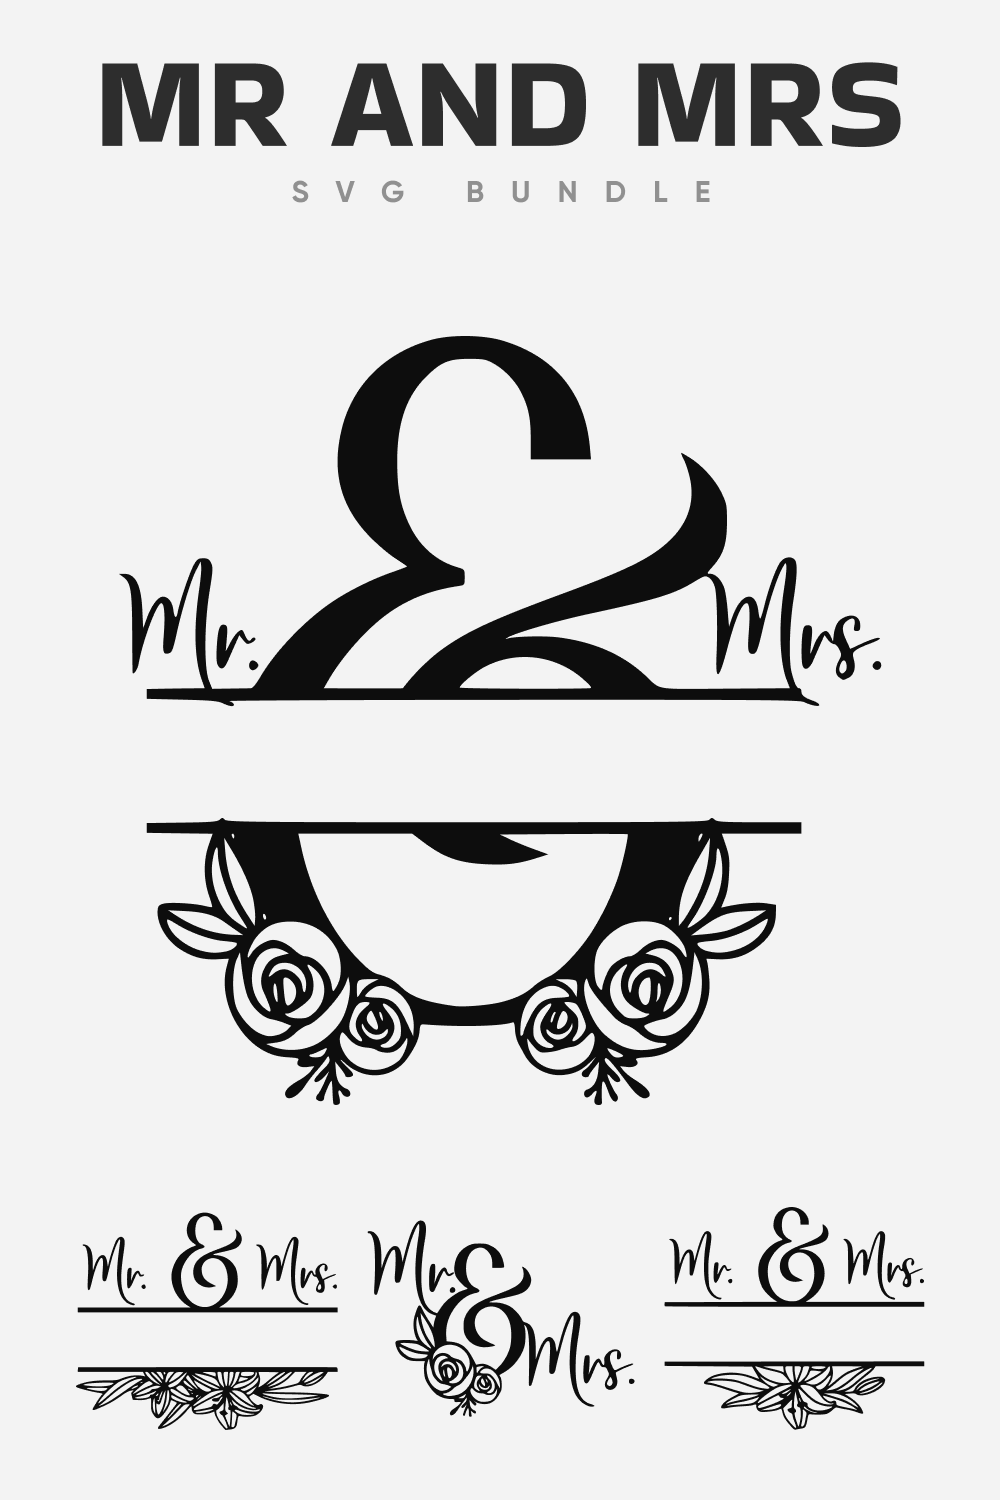 Black color mr and mrs SVG bundle.